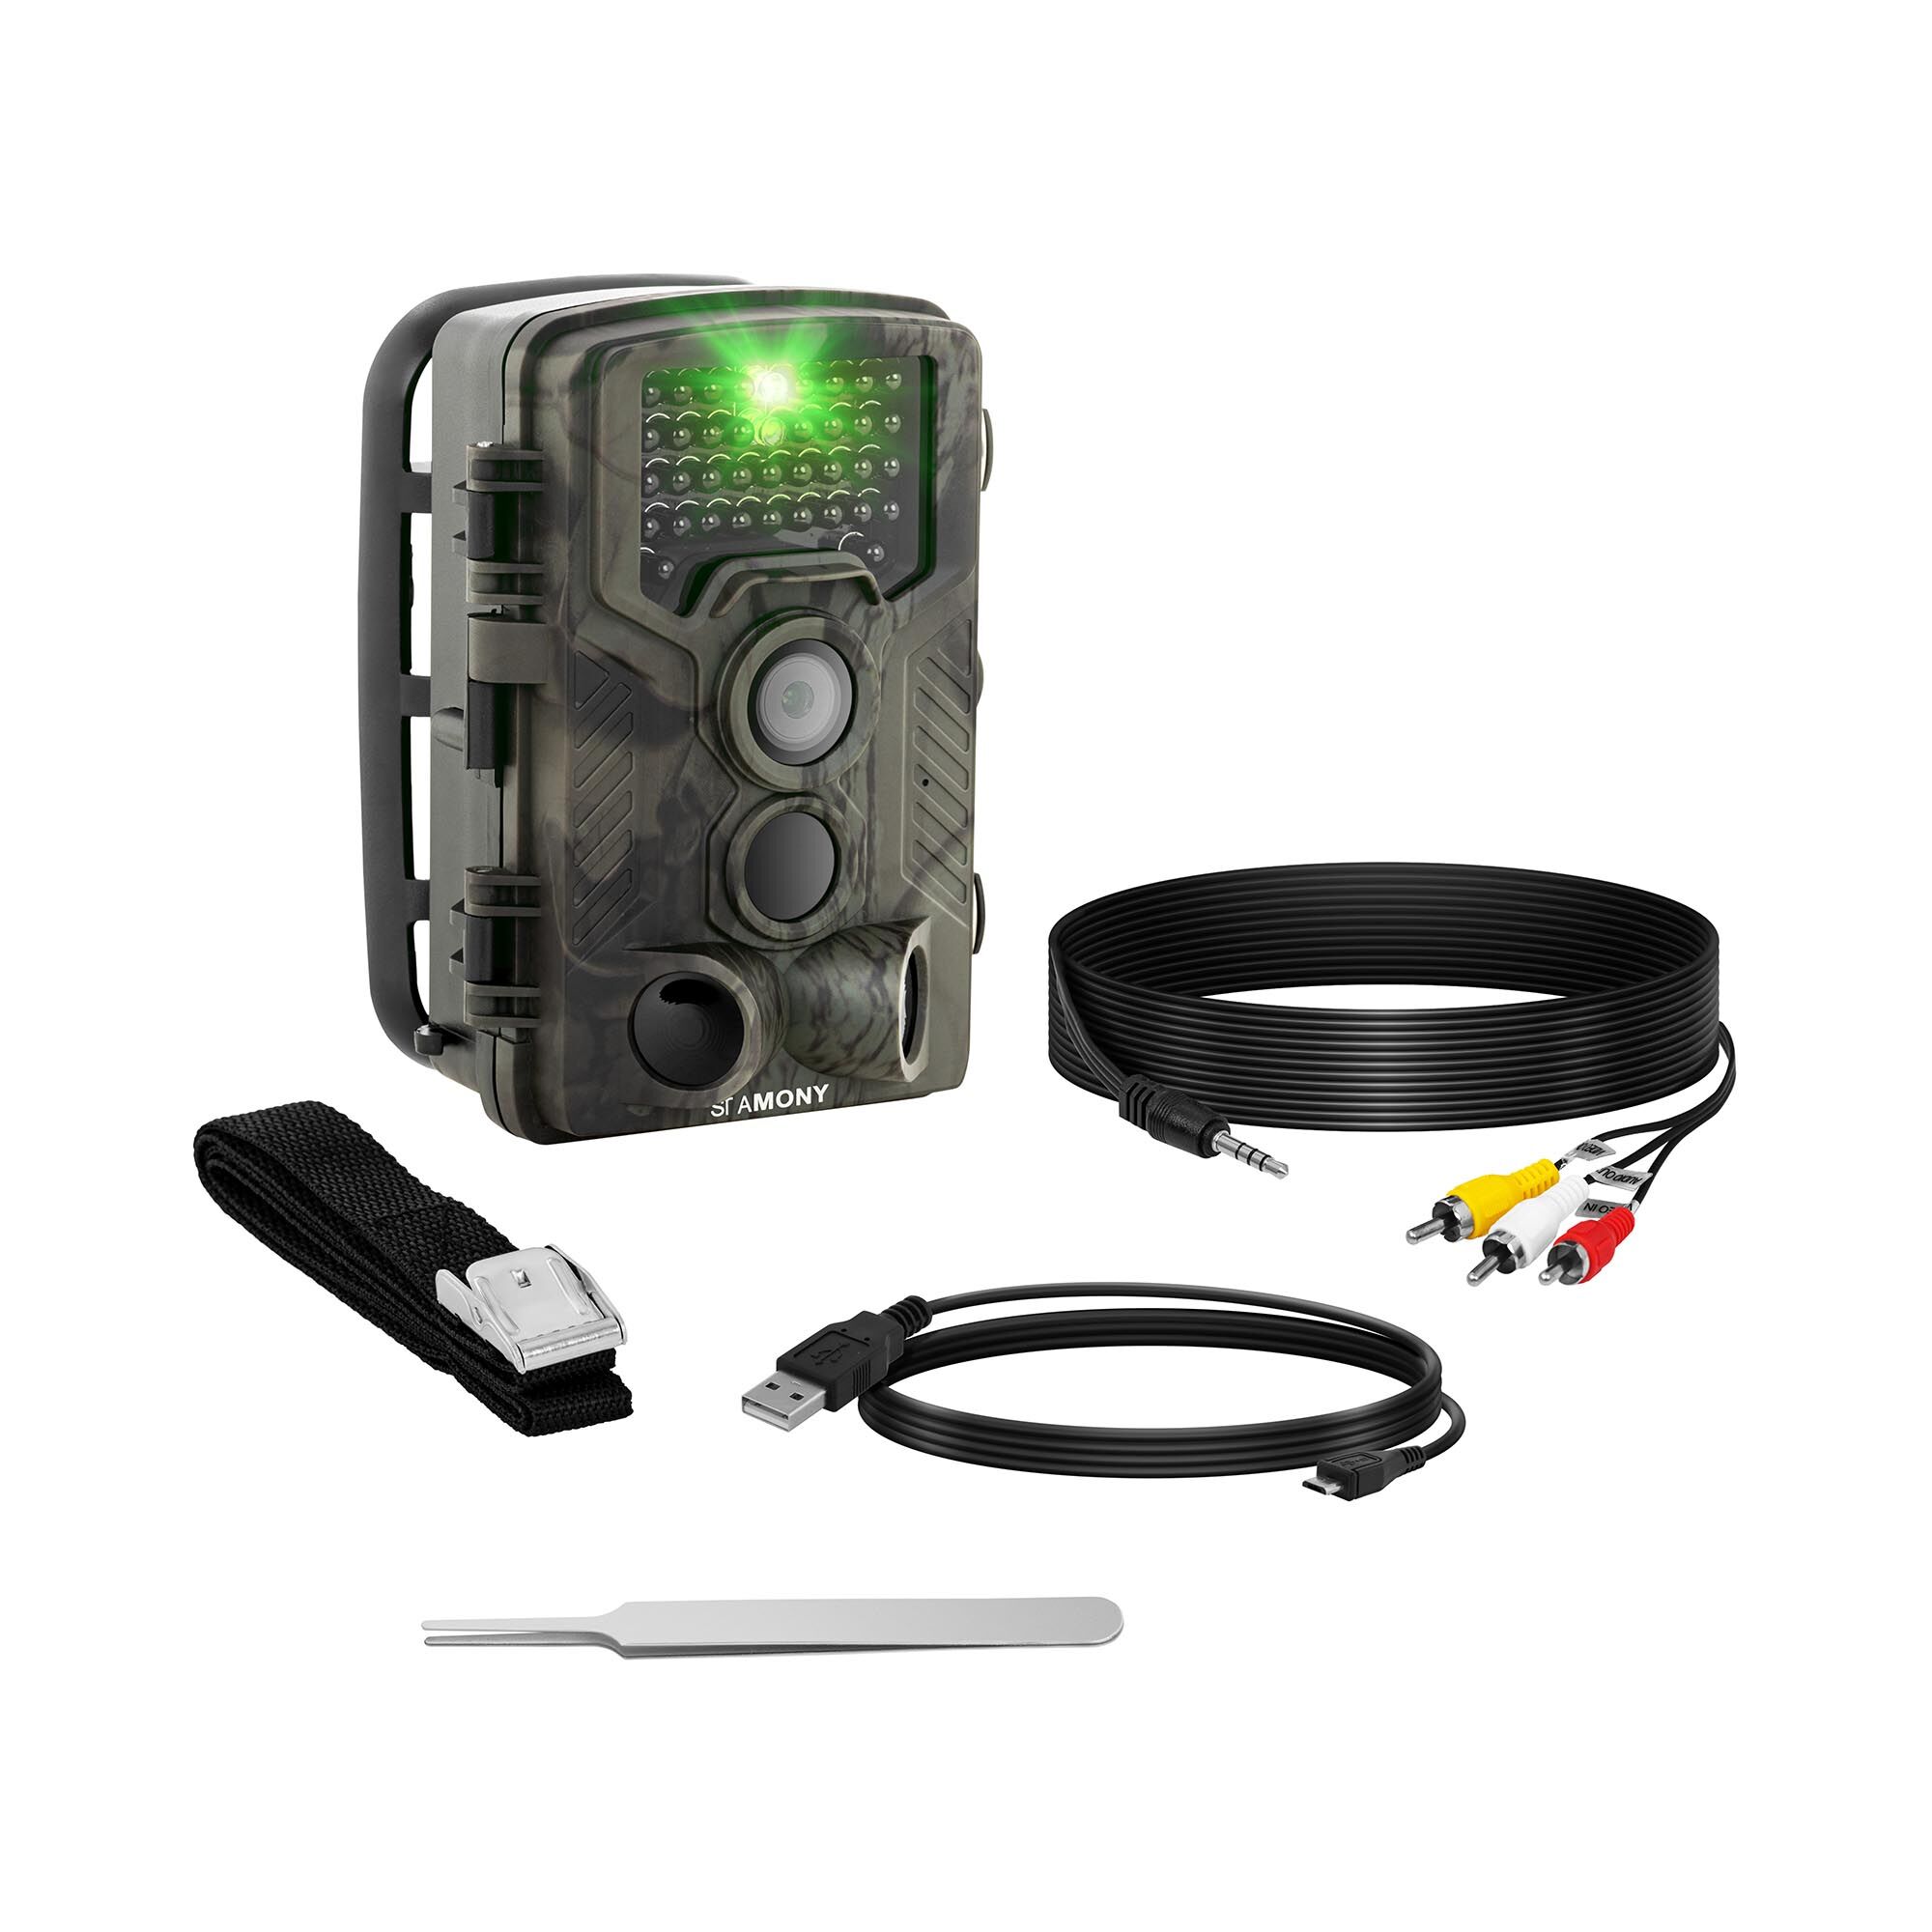 Stamony Fotopast - 8 MP - Full HD - 42 infračervených LED diod - 20 m - 0,3 s - 3G ST-HC-8000G